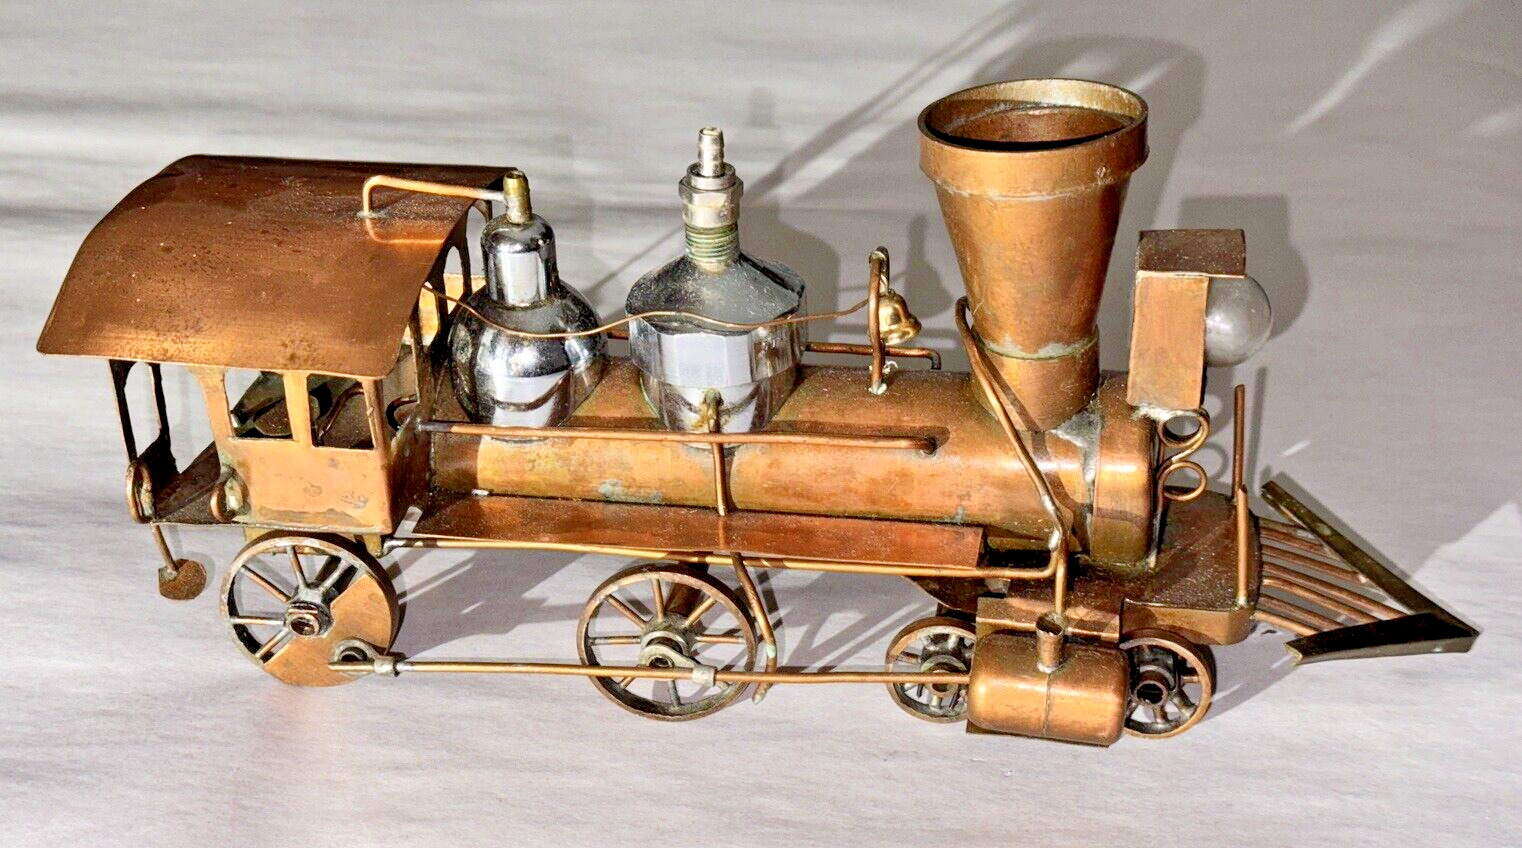 Vintage Handmade Copper Toy Train Engine Sculpture Artwork